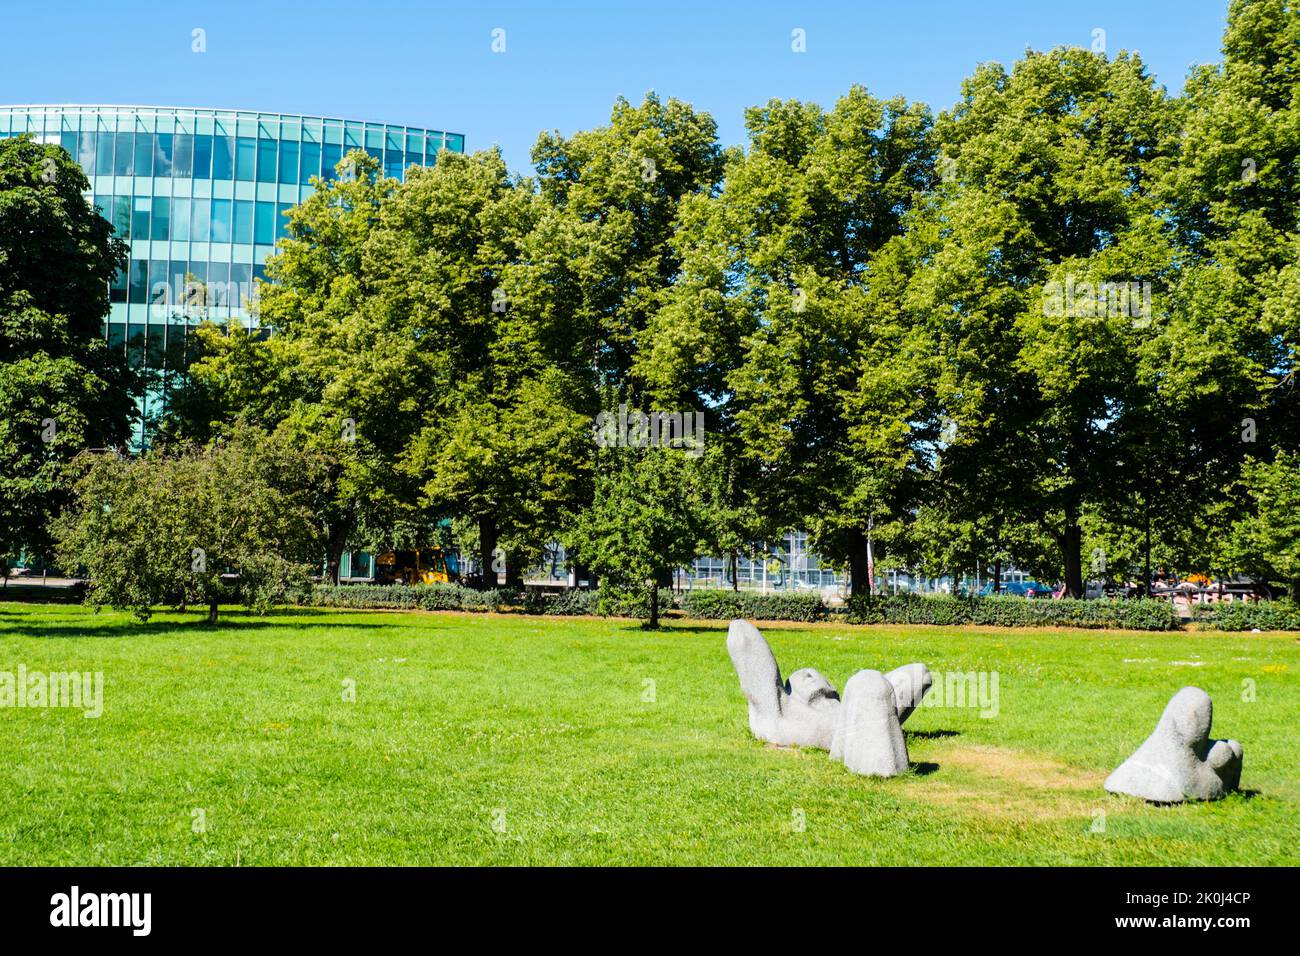 Snelli Park, Tallinn, Estonia Stock Photo